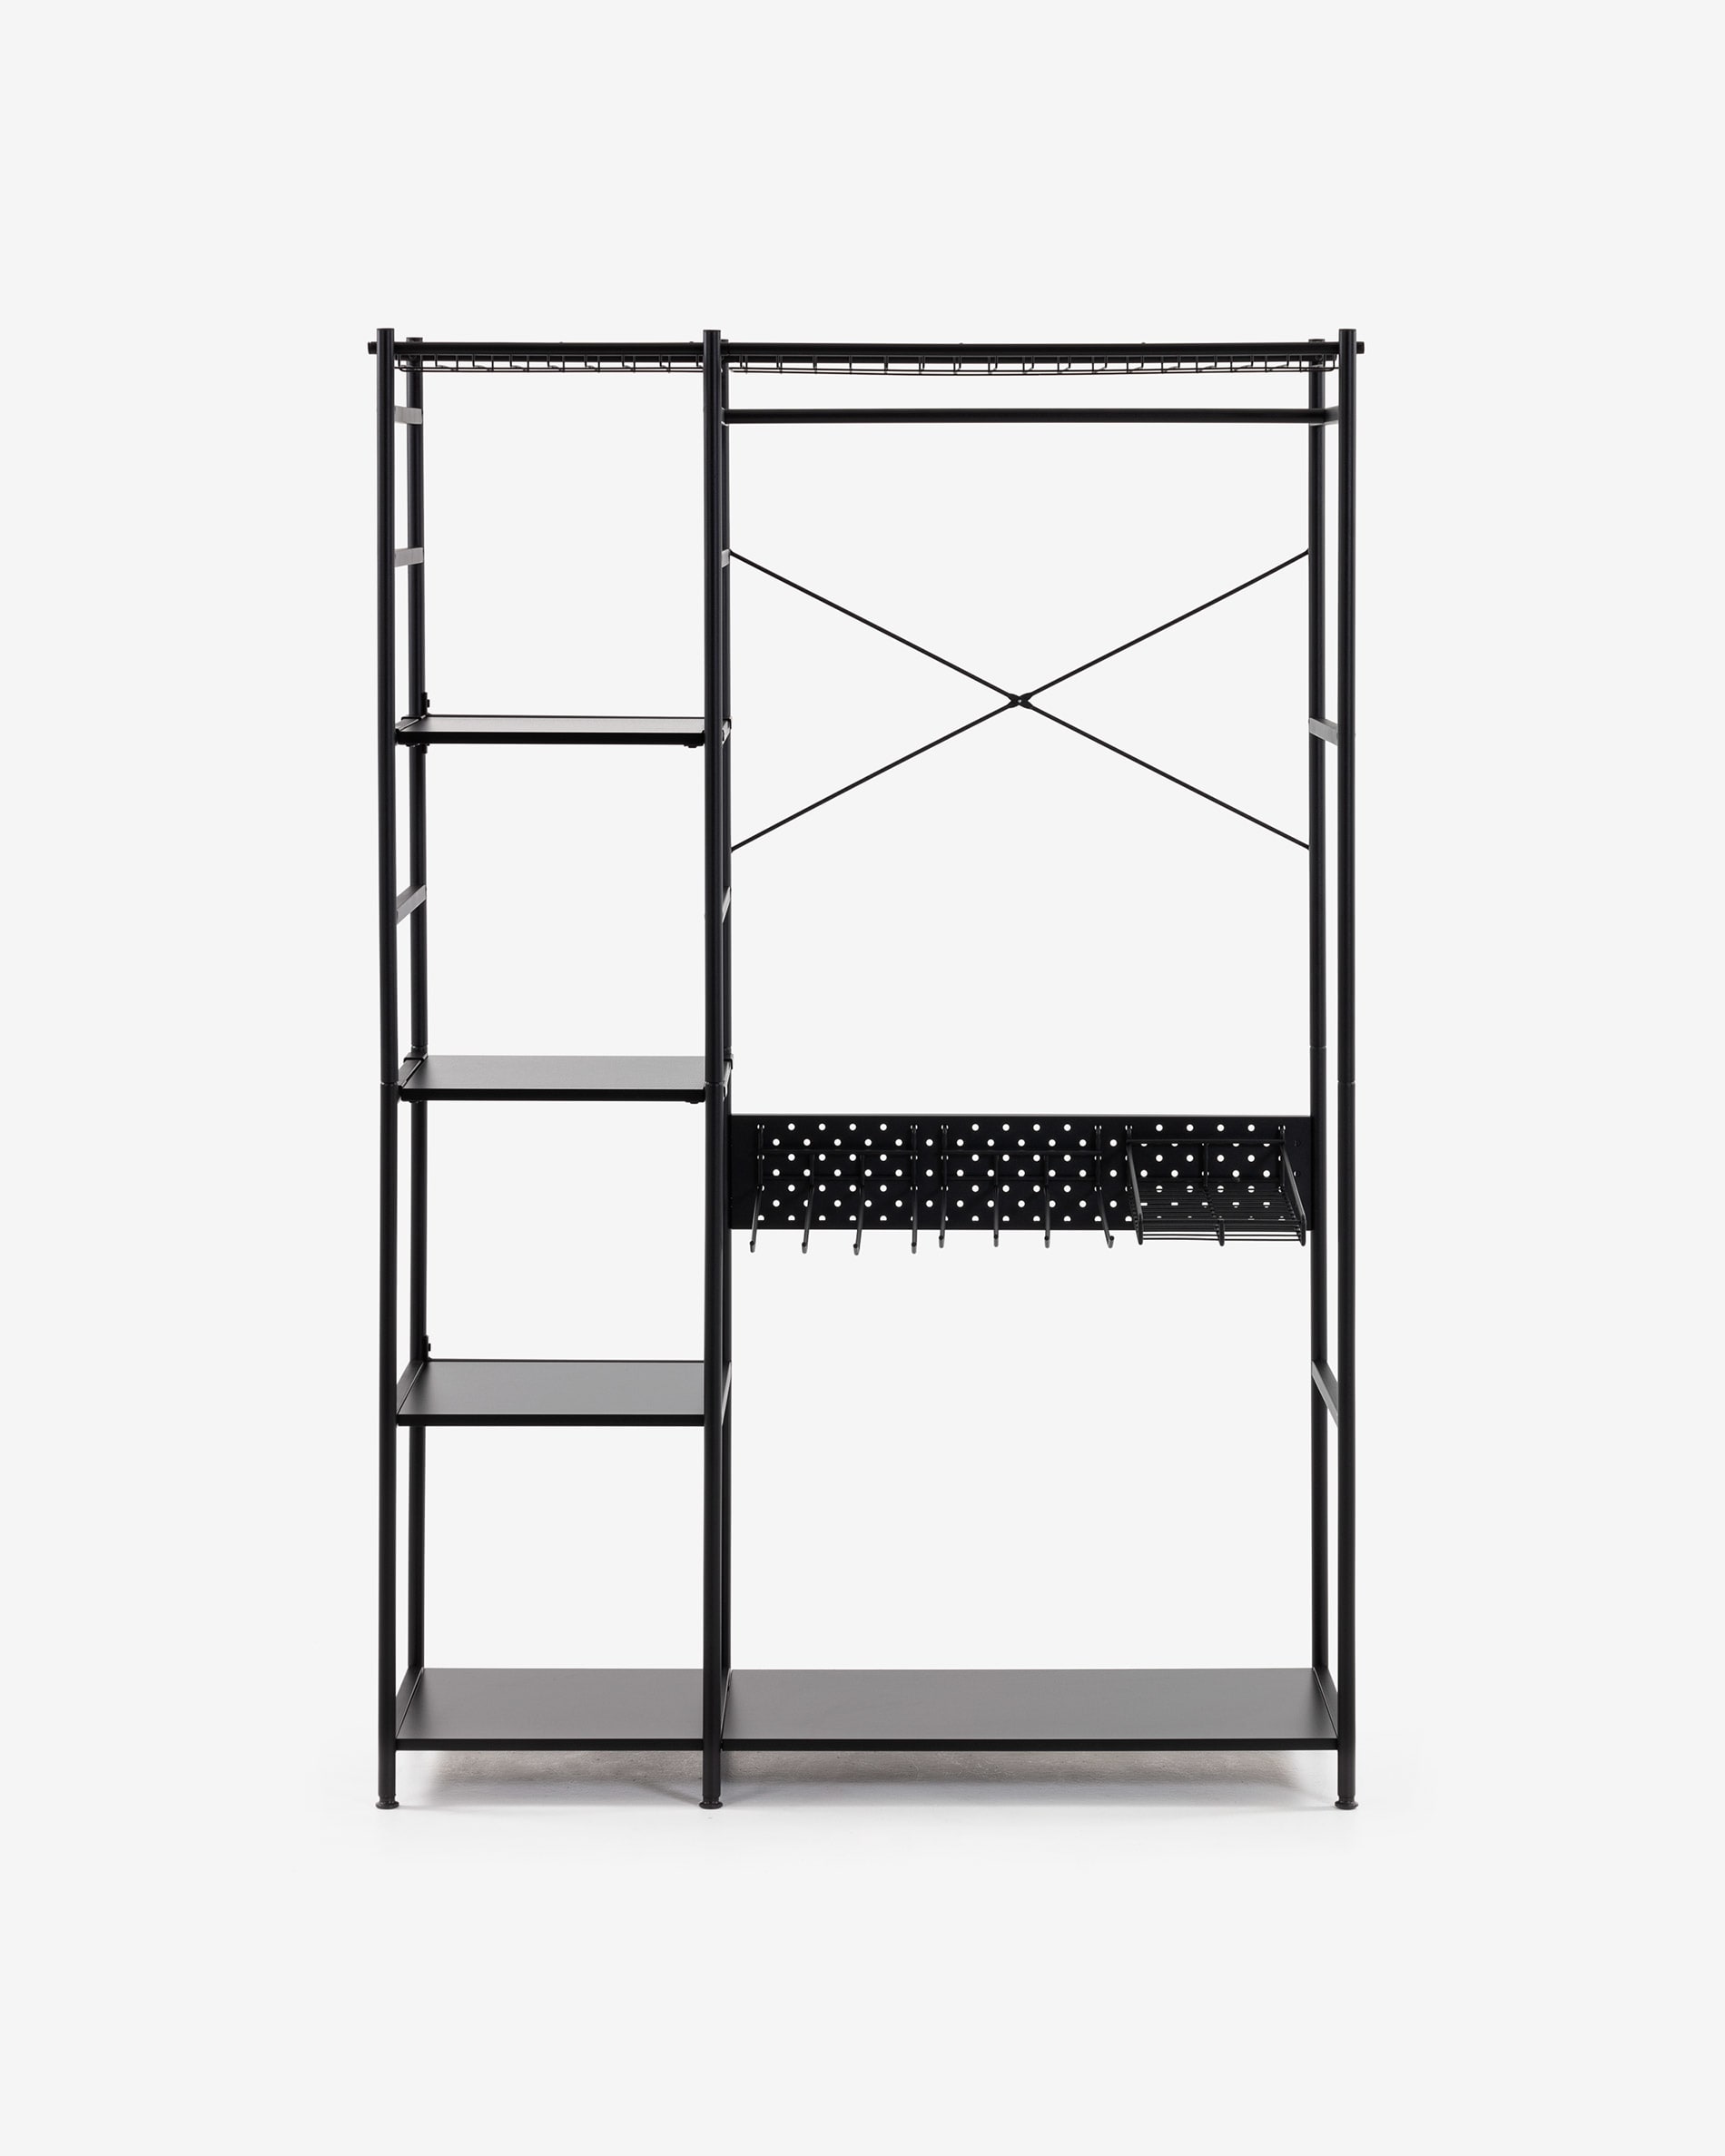 Armario de tres puertas y dos cajones con baldas y perchero, color blanco,  Medidas 120 x 170 x 50 cm